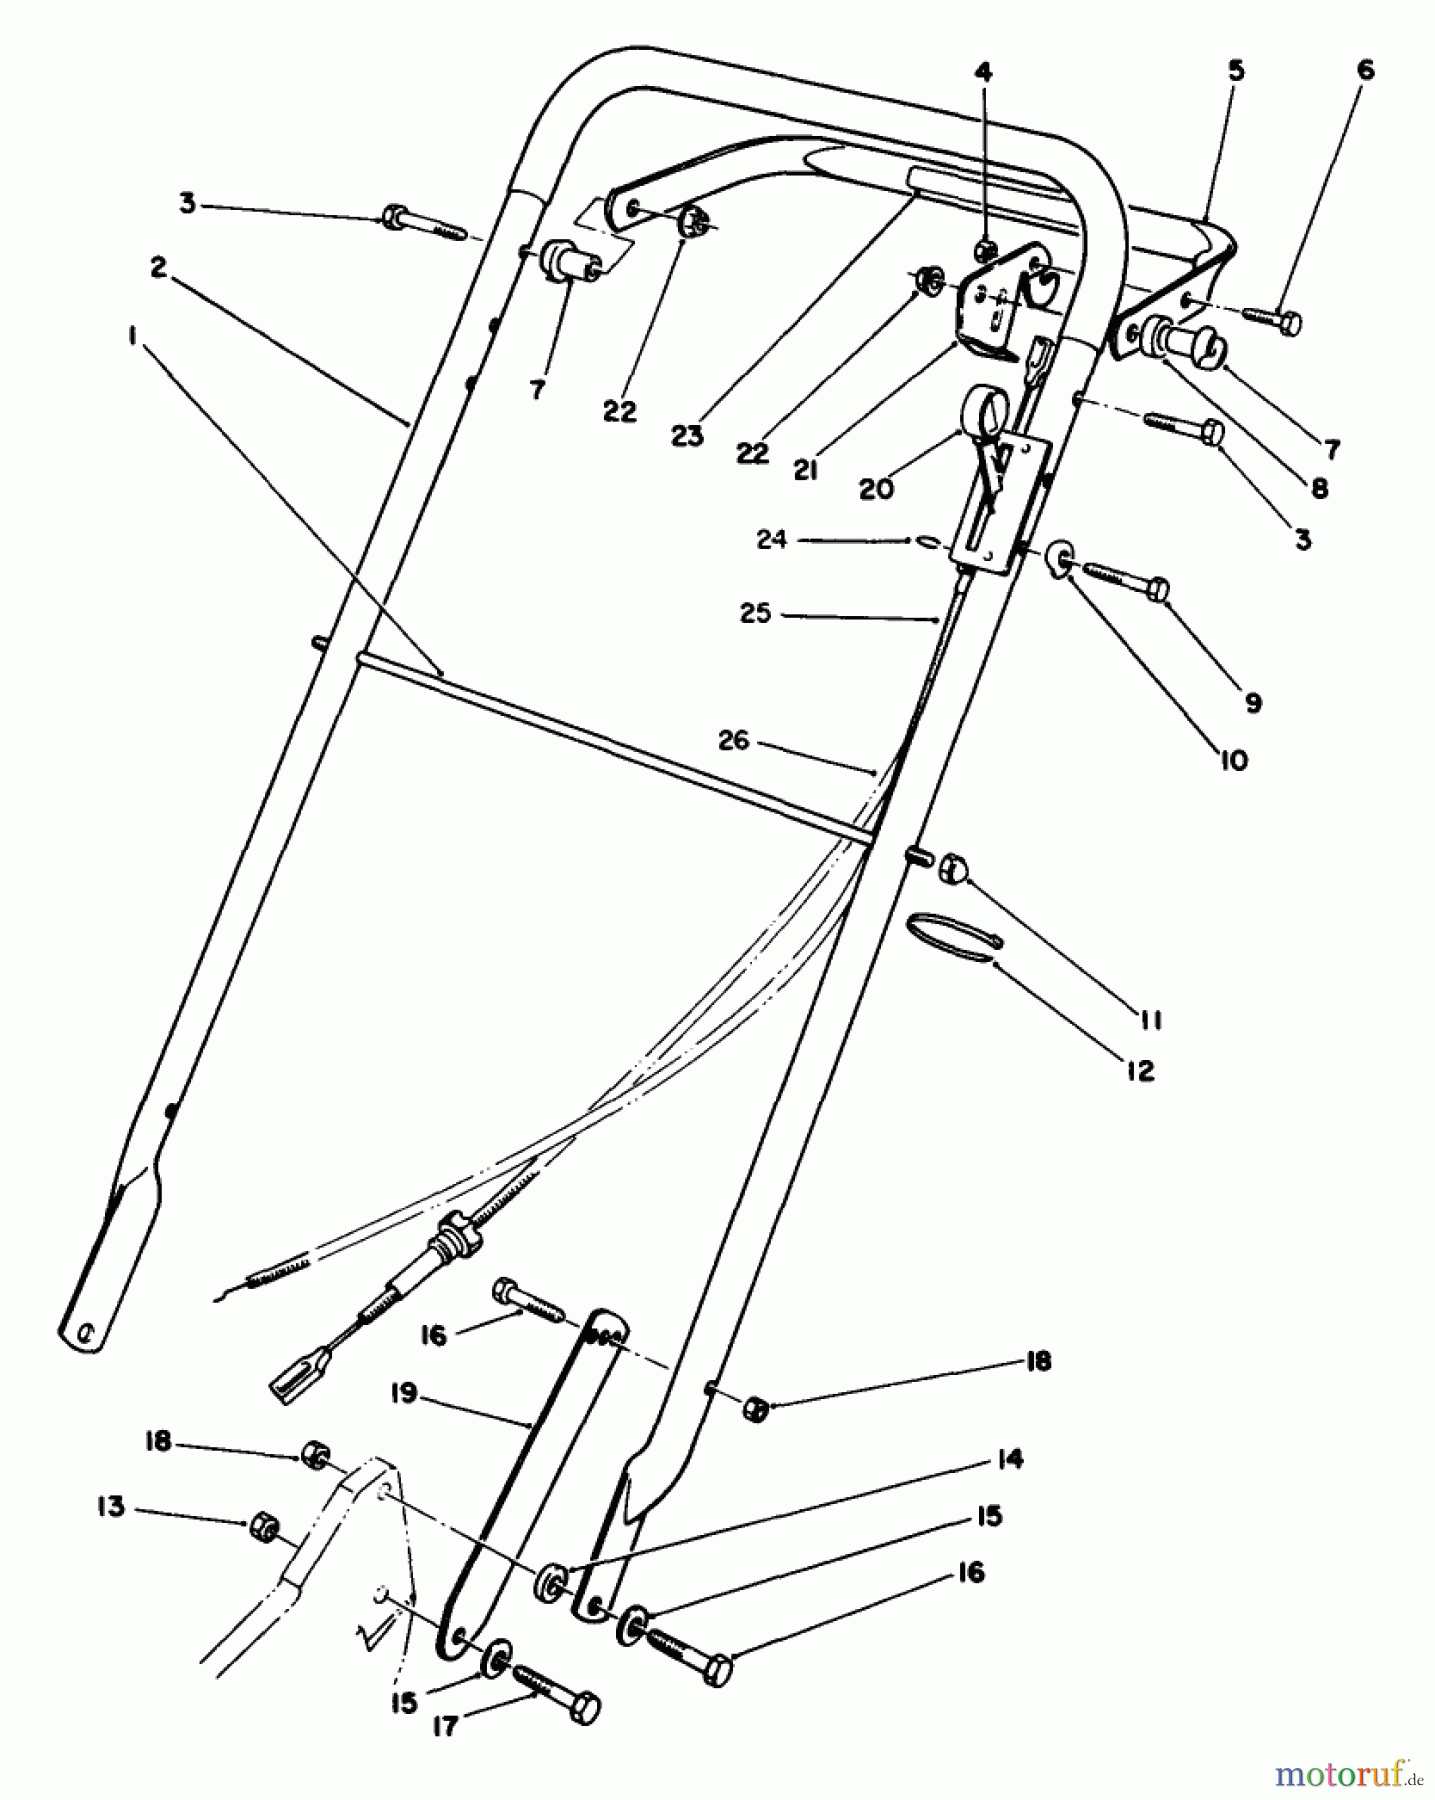  Toro Neu Mowers, Walk-Behind Seite 2 22621C - Toro Lawnmower, 1989 (9000001-9999999) HANDLE ASSEMBLY